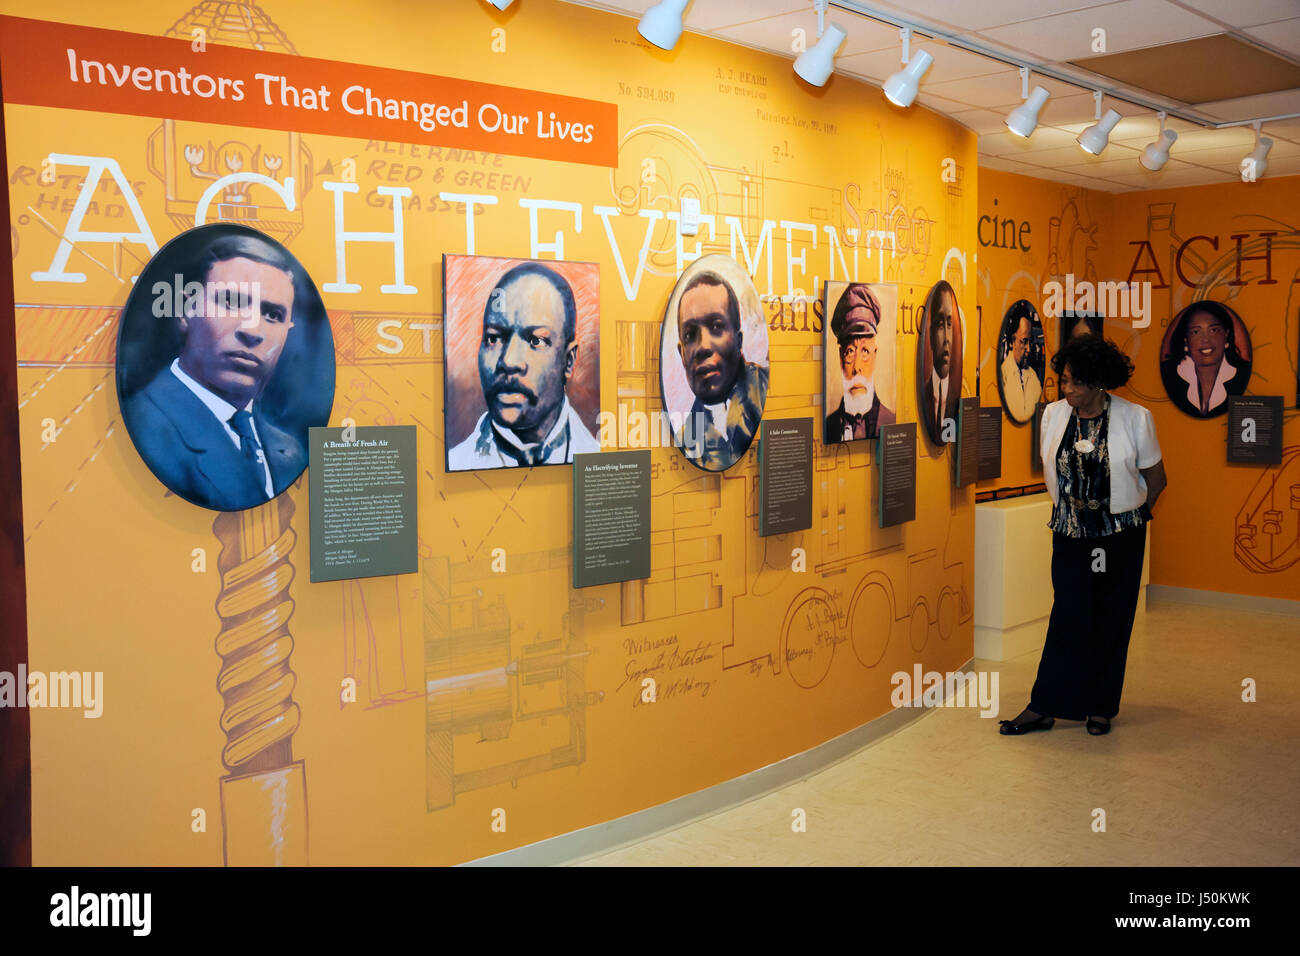 Dothan Alabama, Museo interpretativo George Washington Carver, negros africanos africanos minoría étnica, historia, exposición de colección, inventar Foto de stock